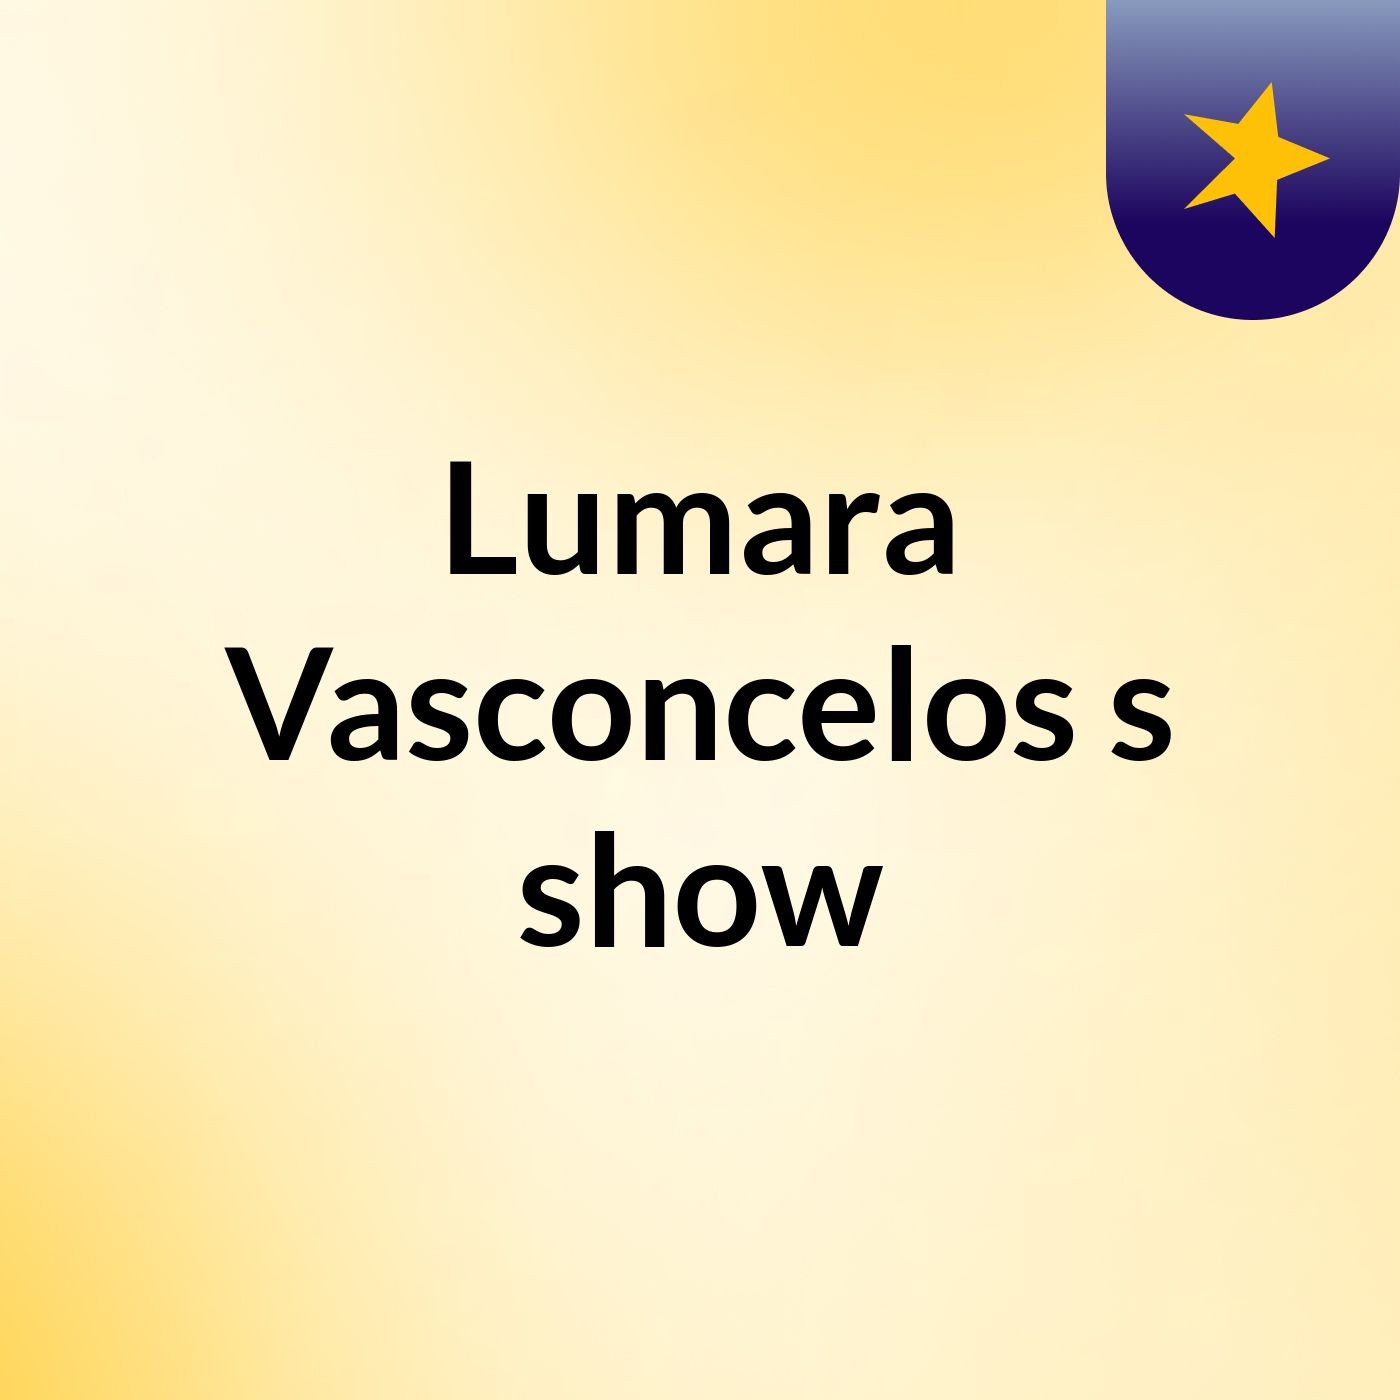 Lumara Vasconcelos's show